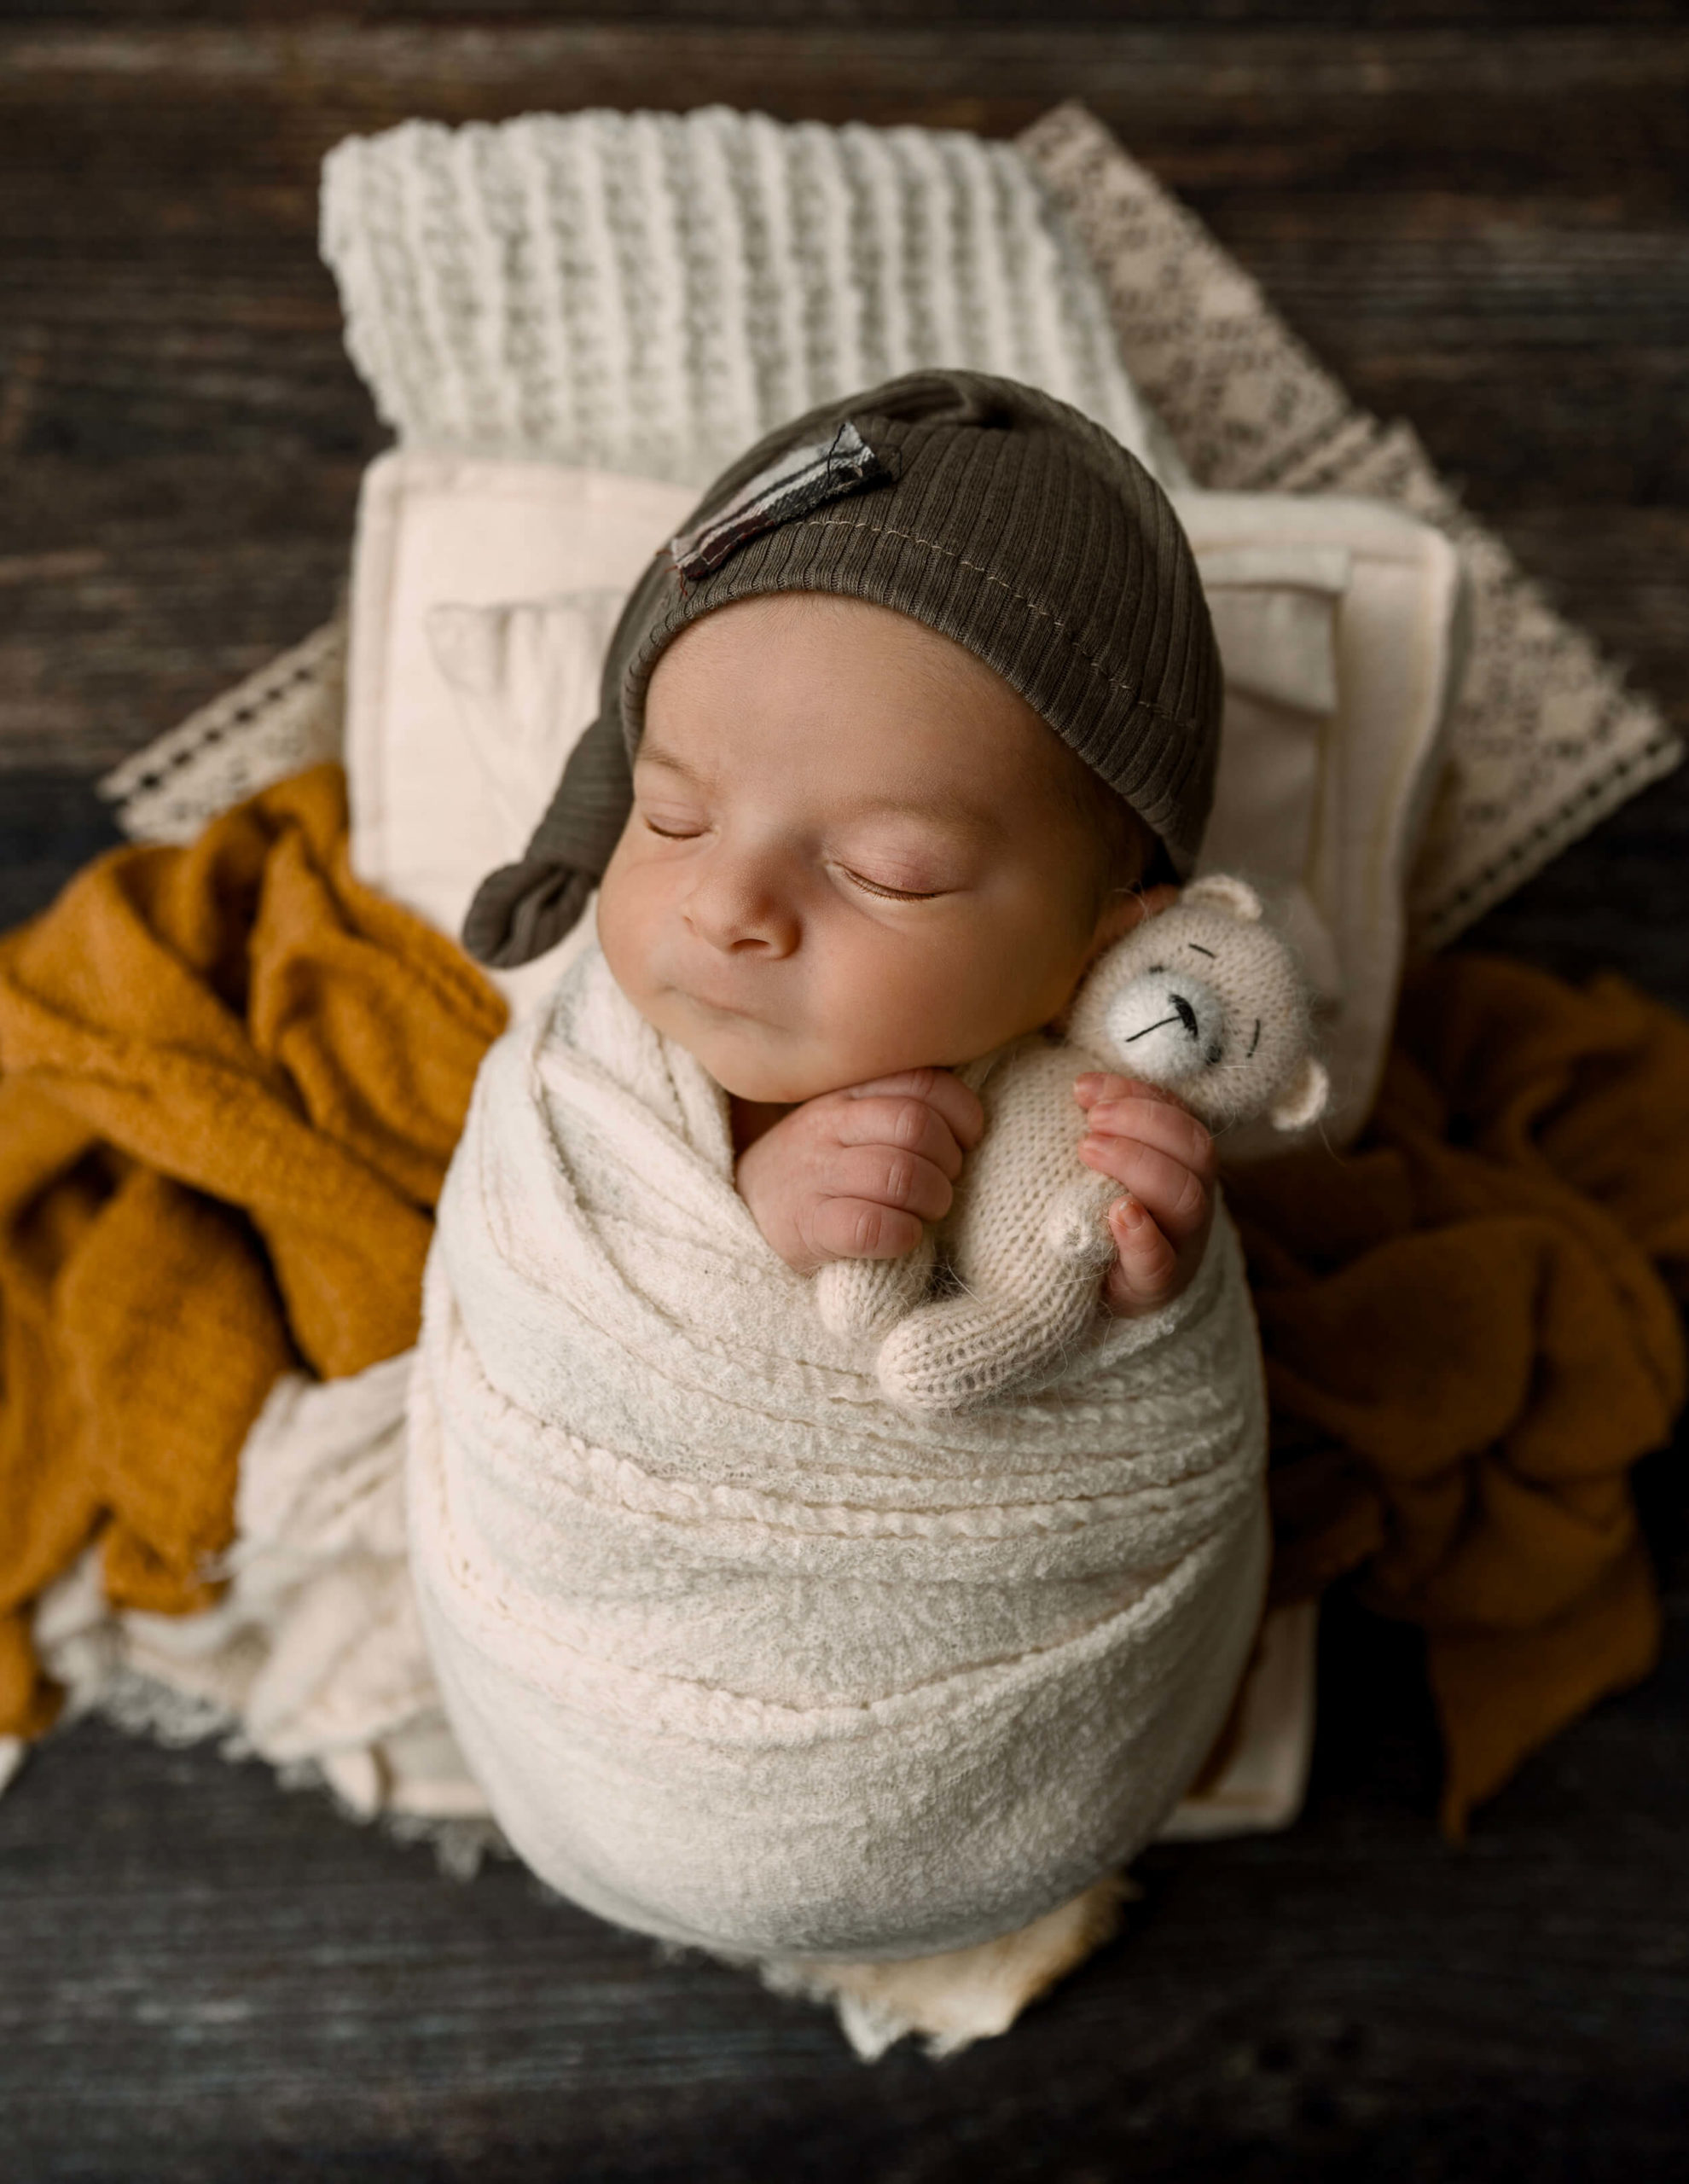 Baby boy with a sleepy cap holding a teddy bear